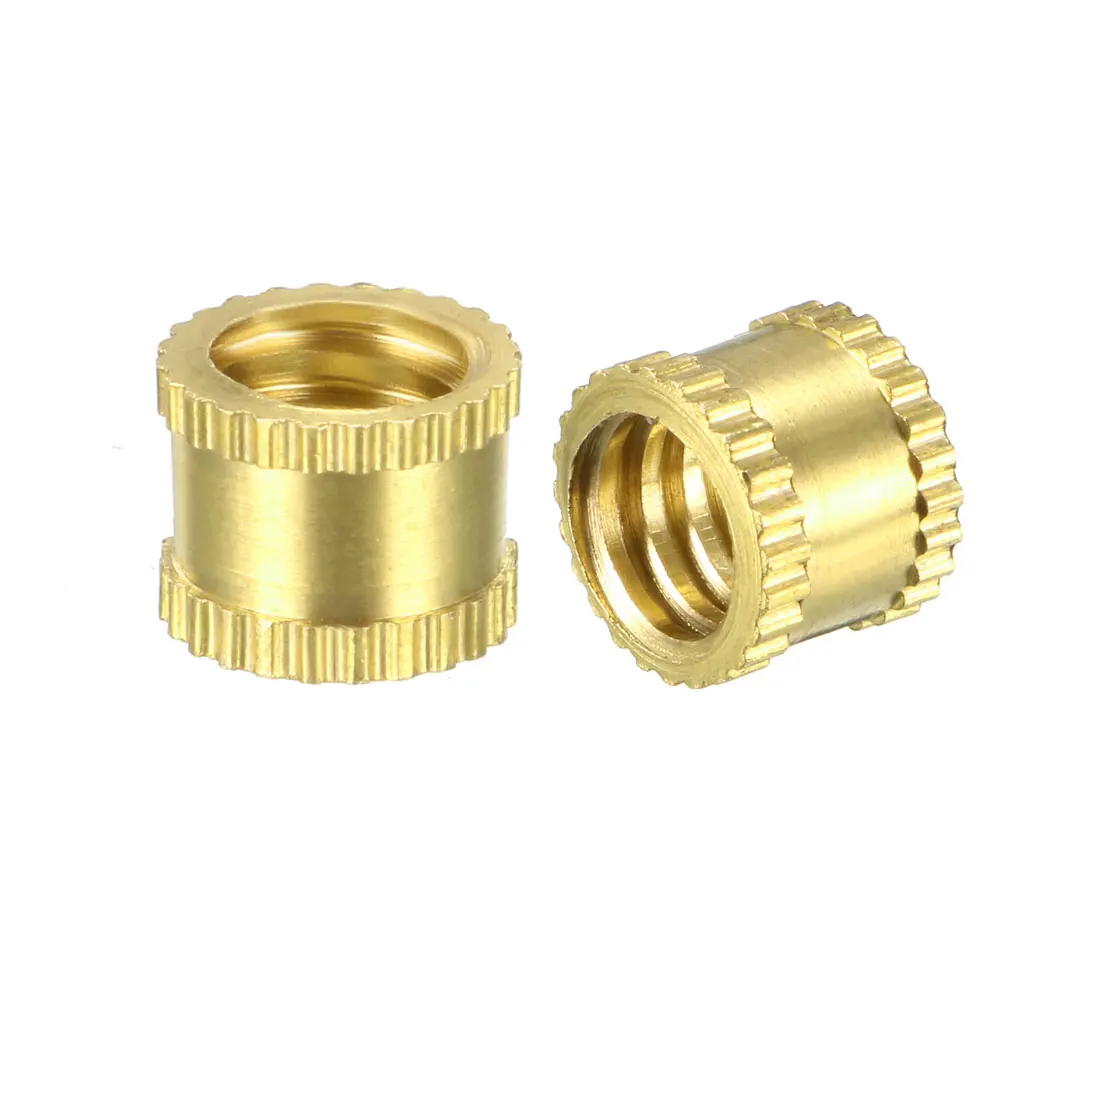 

uxcell 1/4"-20 x 6mm(L) x 8mm(OD) Female Thread Brass Knurled Threaded Insert Embedment Nuts, 10 Pcs